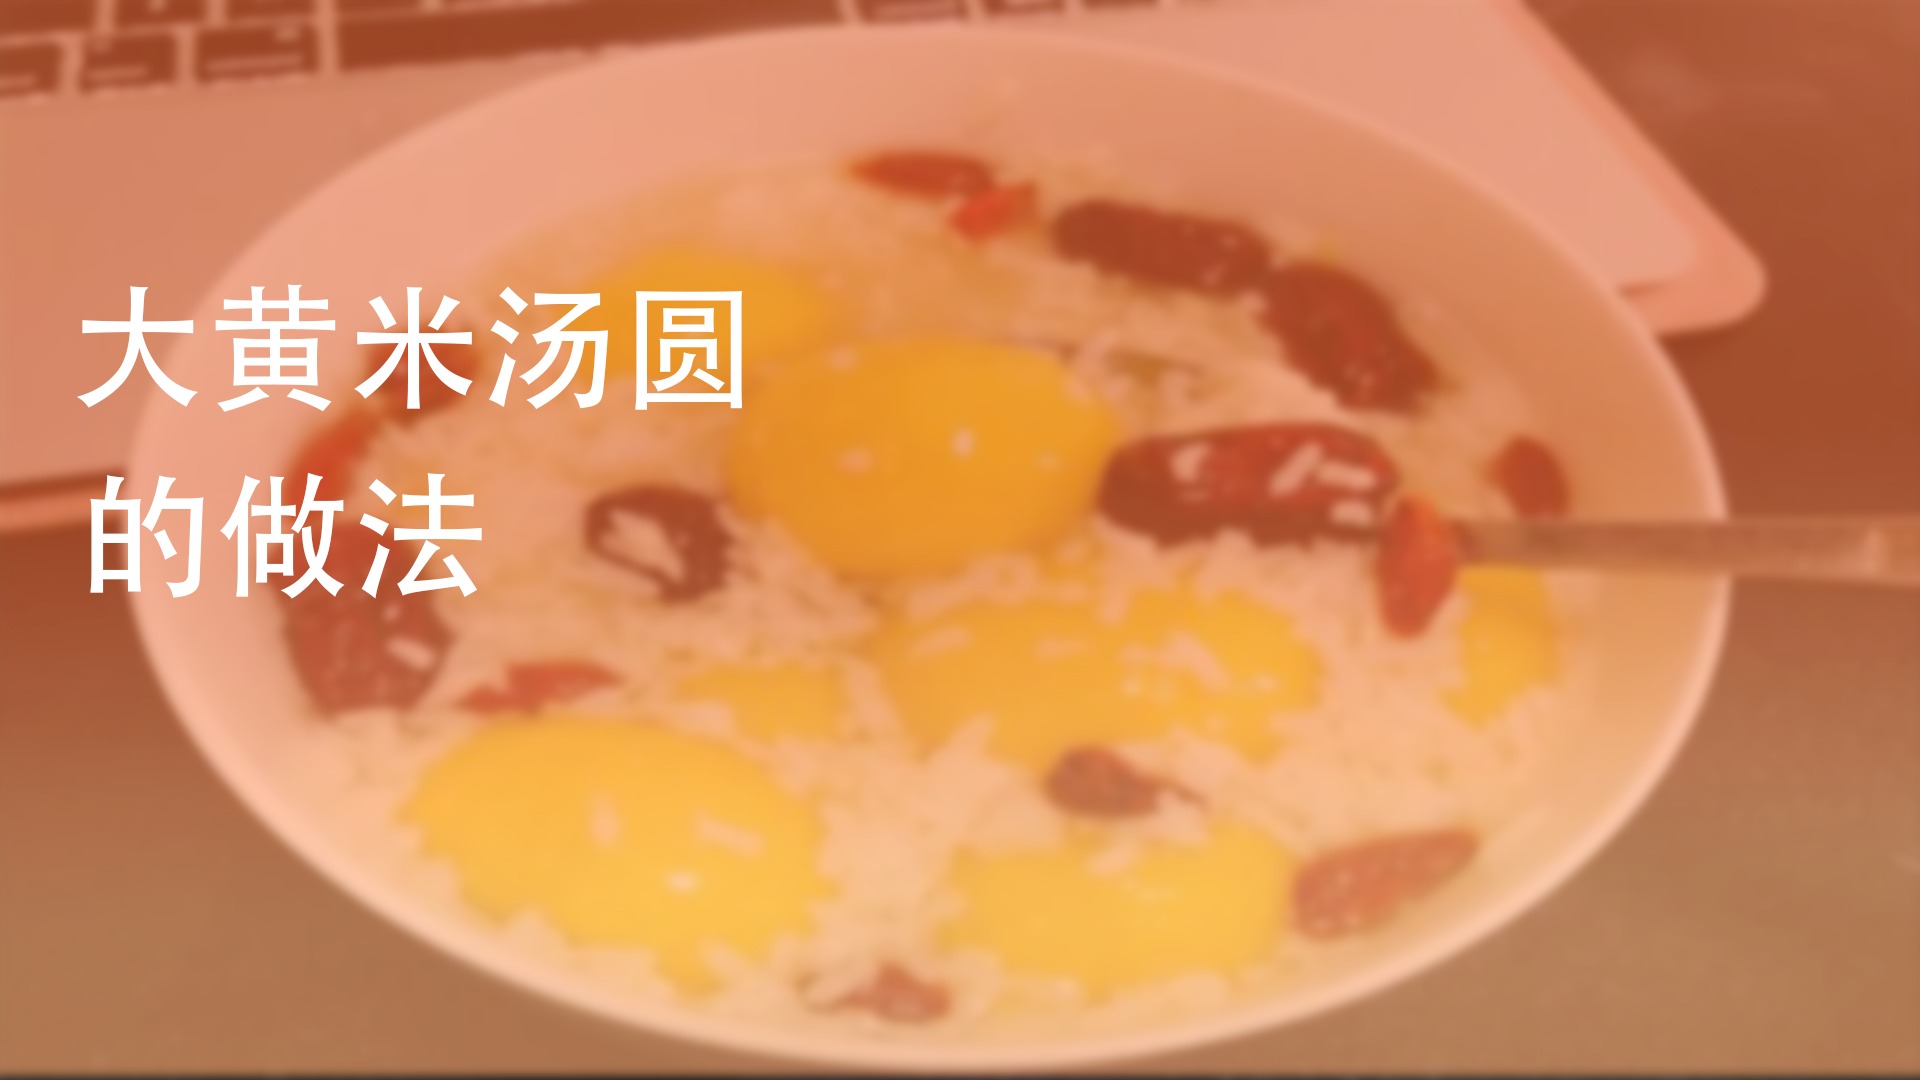 现在汤圆流行吃“黄”的，香甜流心的大黄米汤圆，糯糯的好消化凤凰网凰家尚品_凤凰网